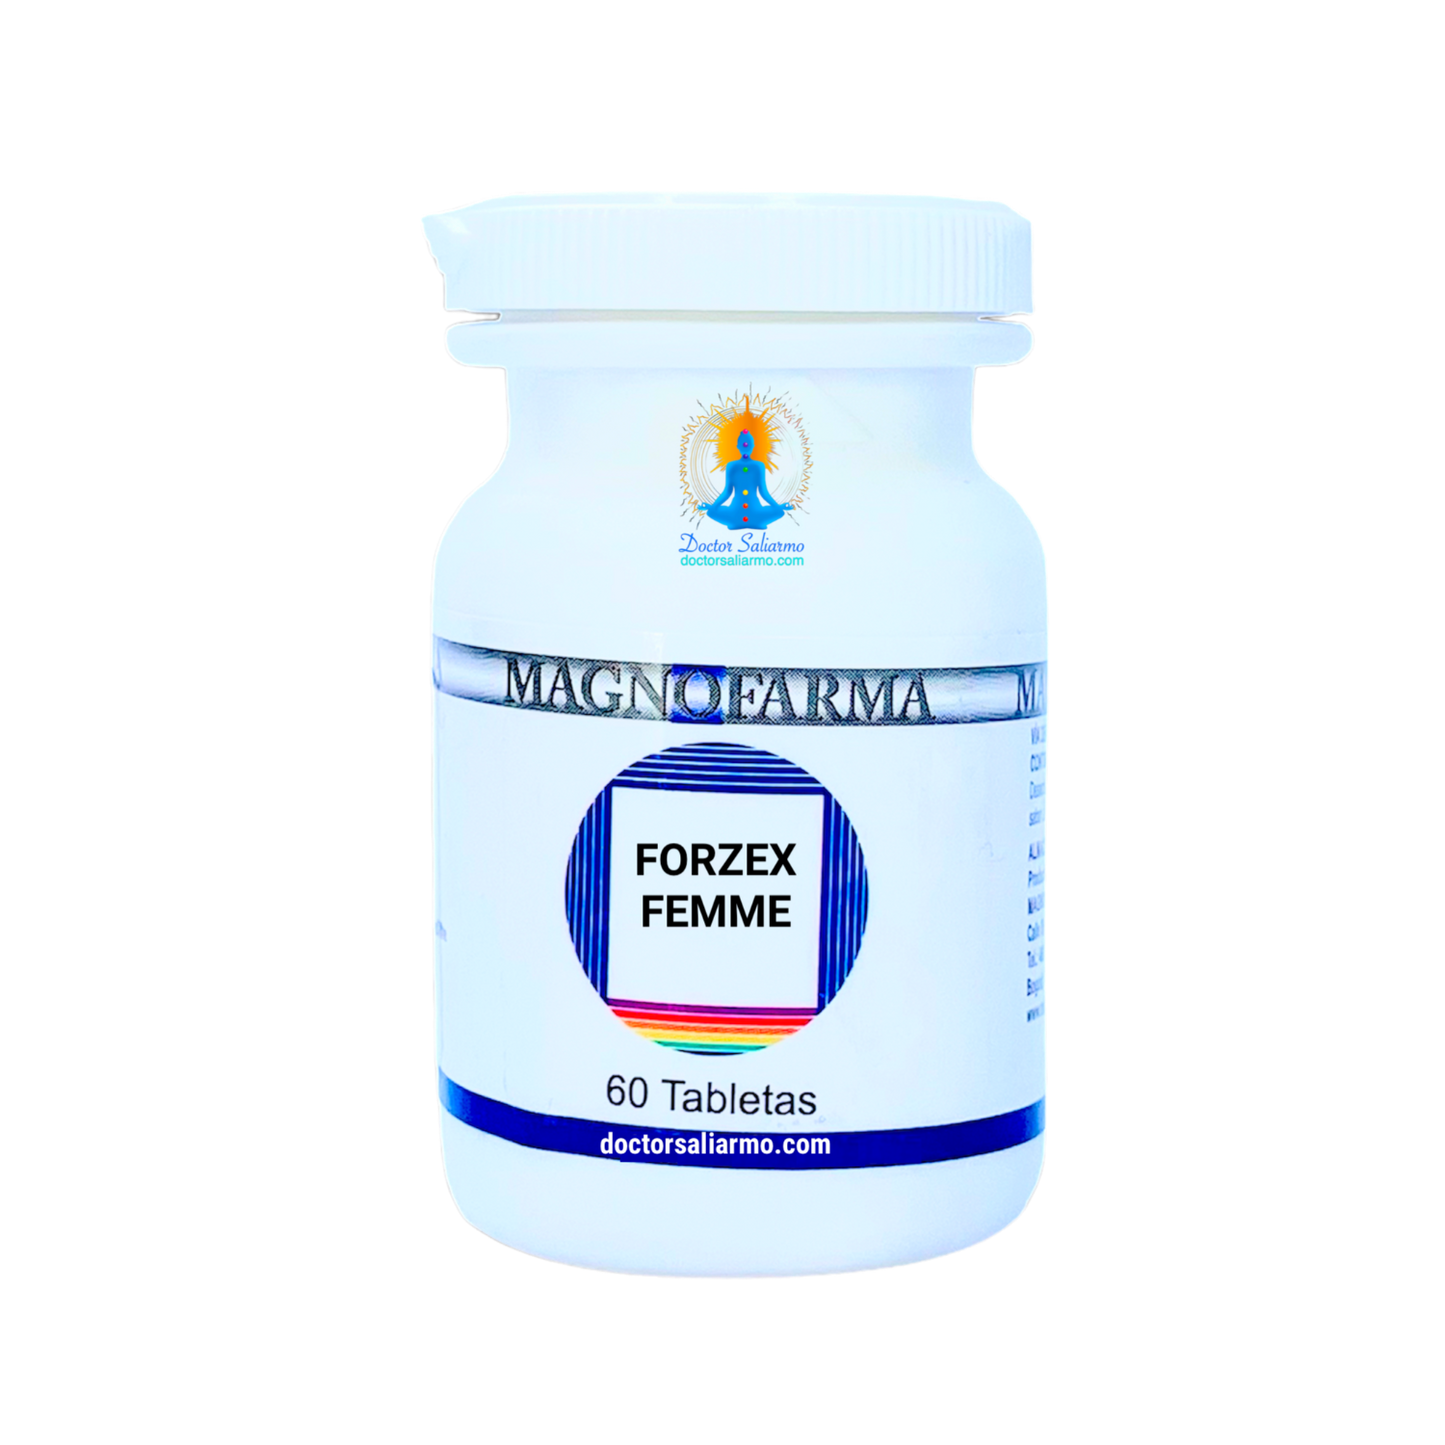 Forzex tabletas medicamento homeopático indicado para la disfunción sexual femenina.